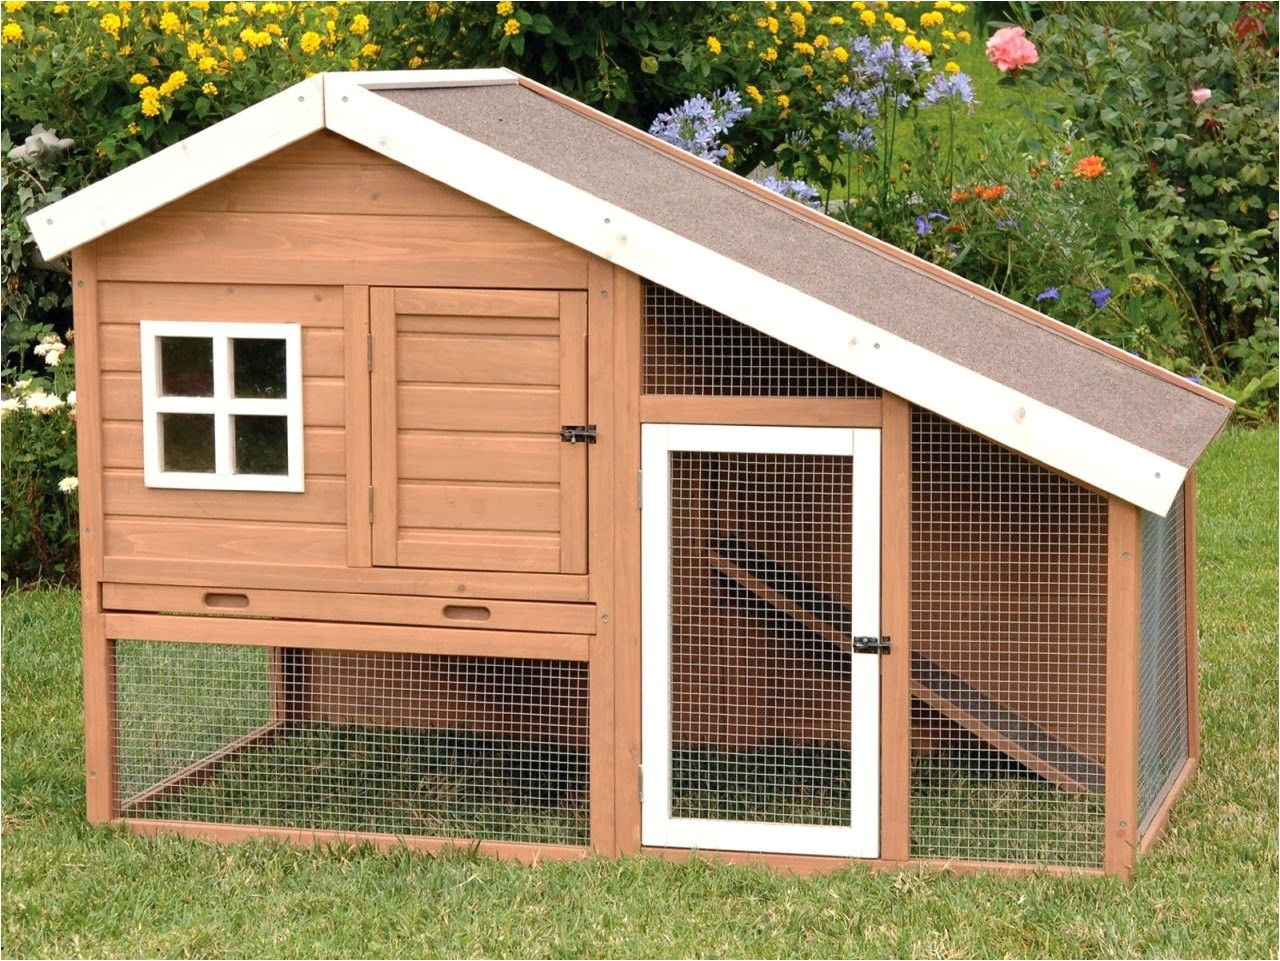 chicken house designs